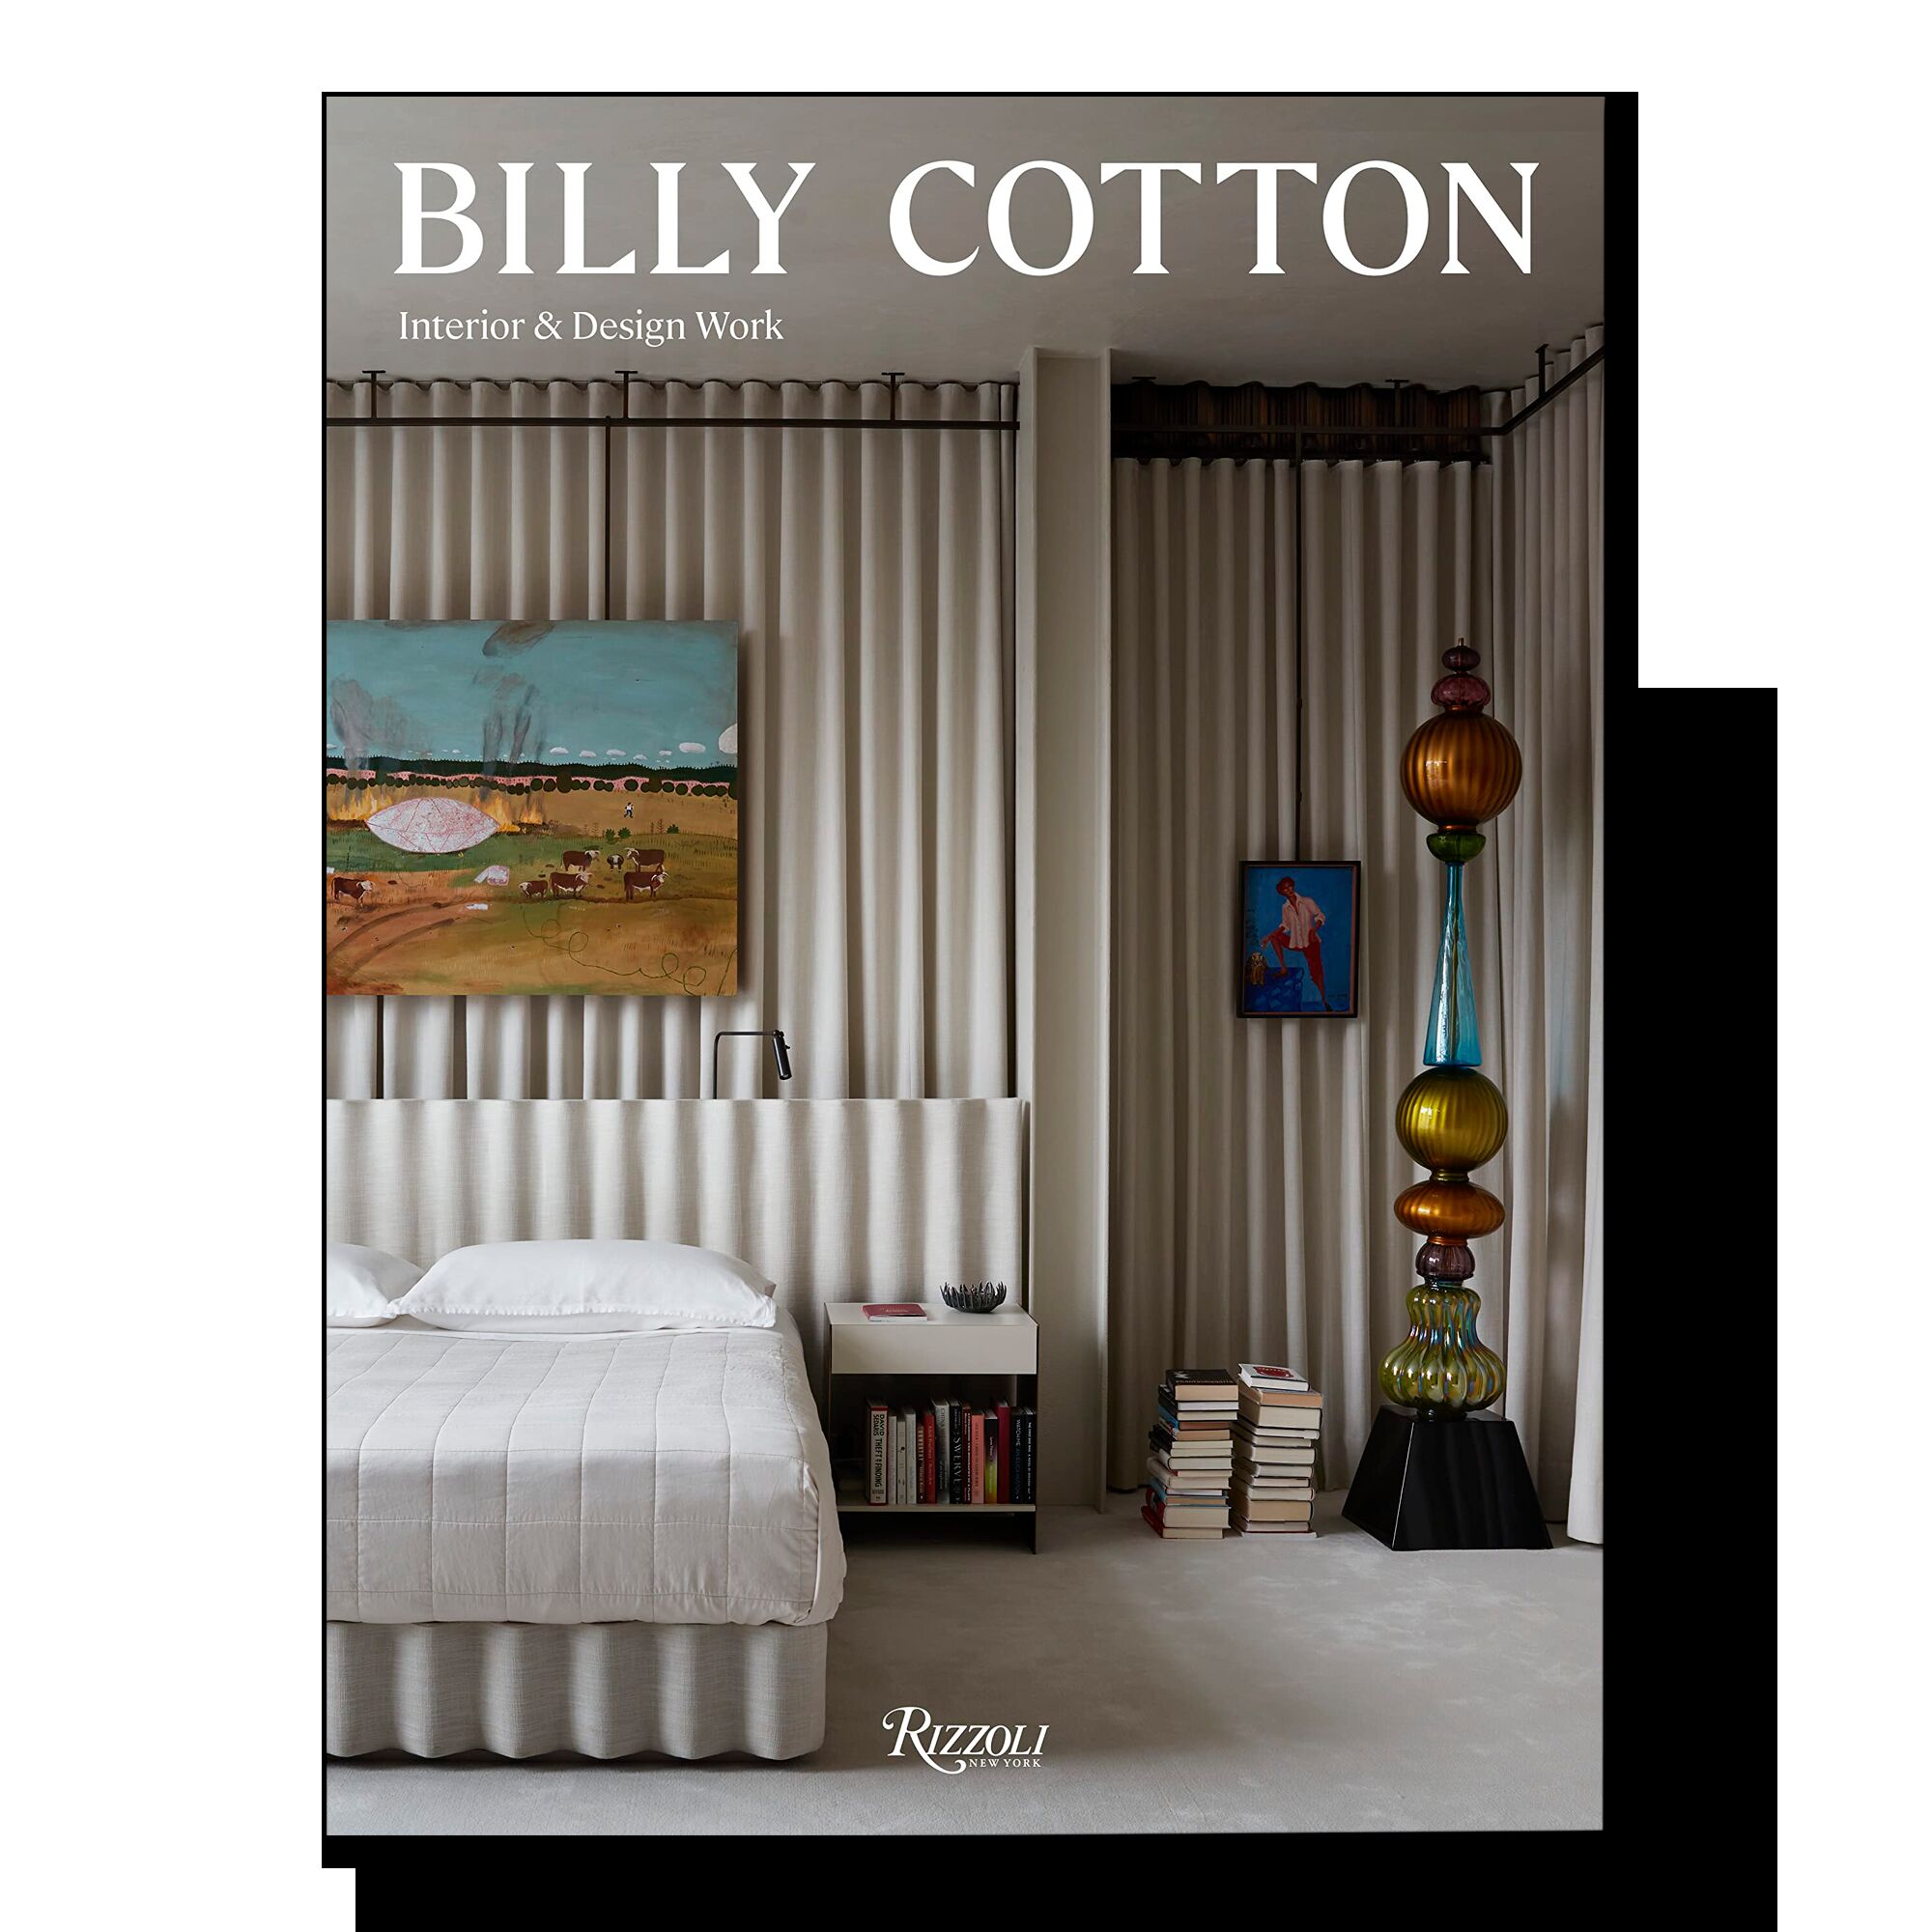 Billy Cotton: Interior and Design Work